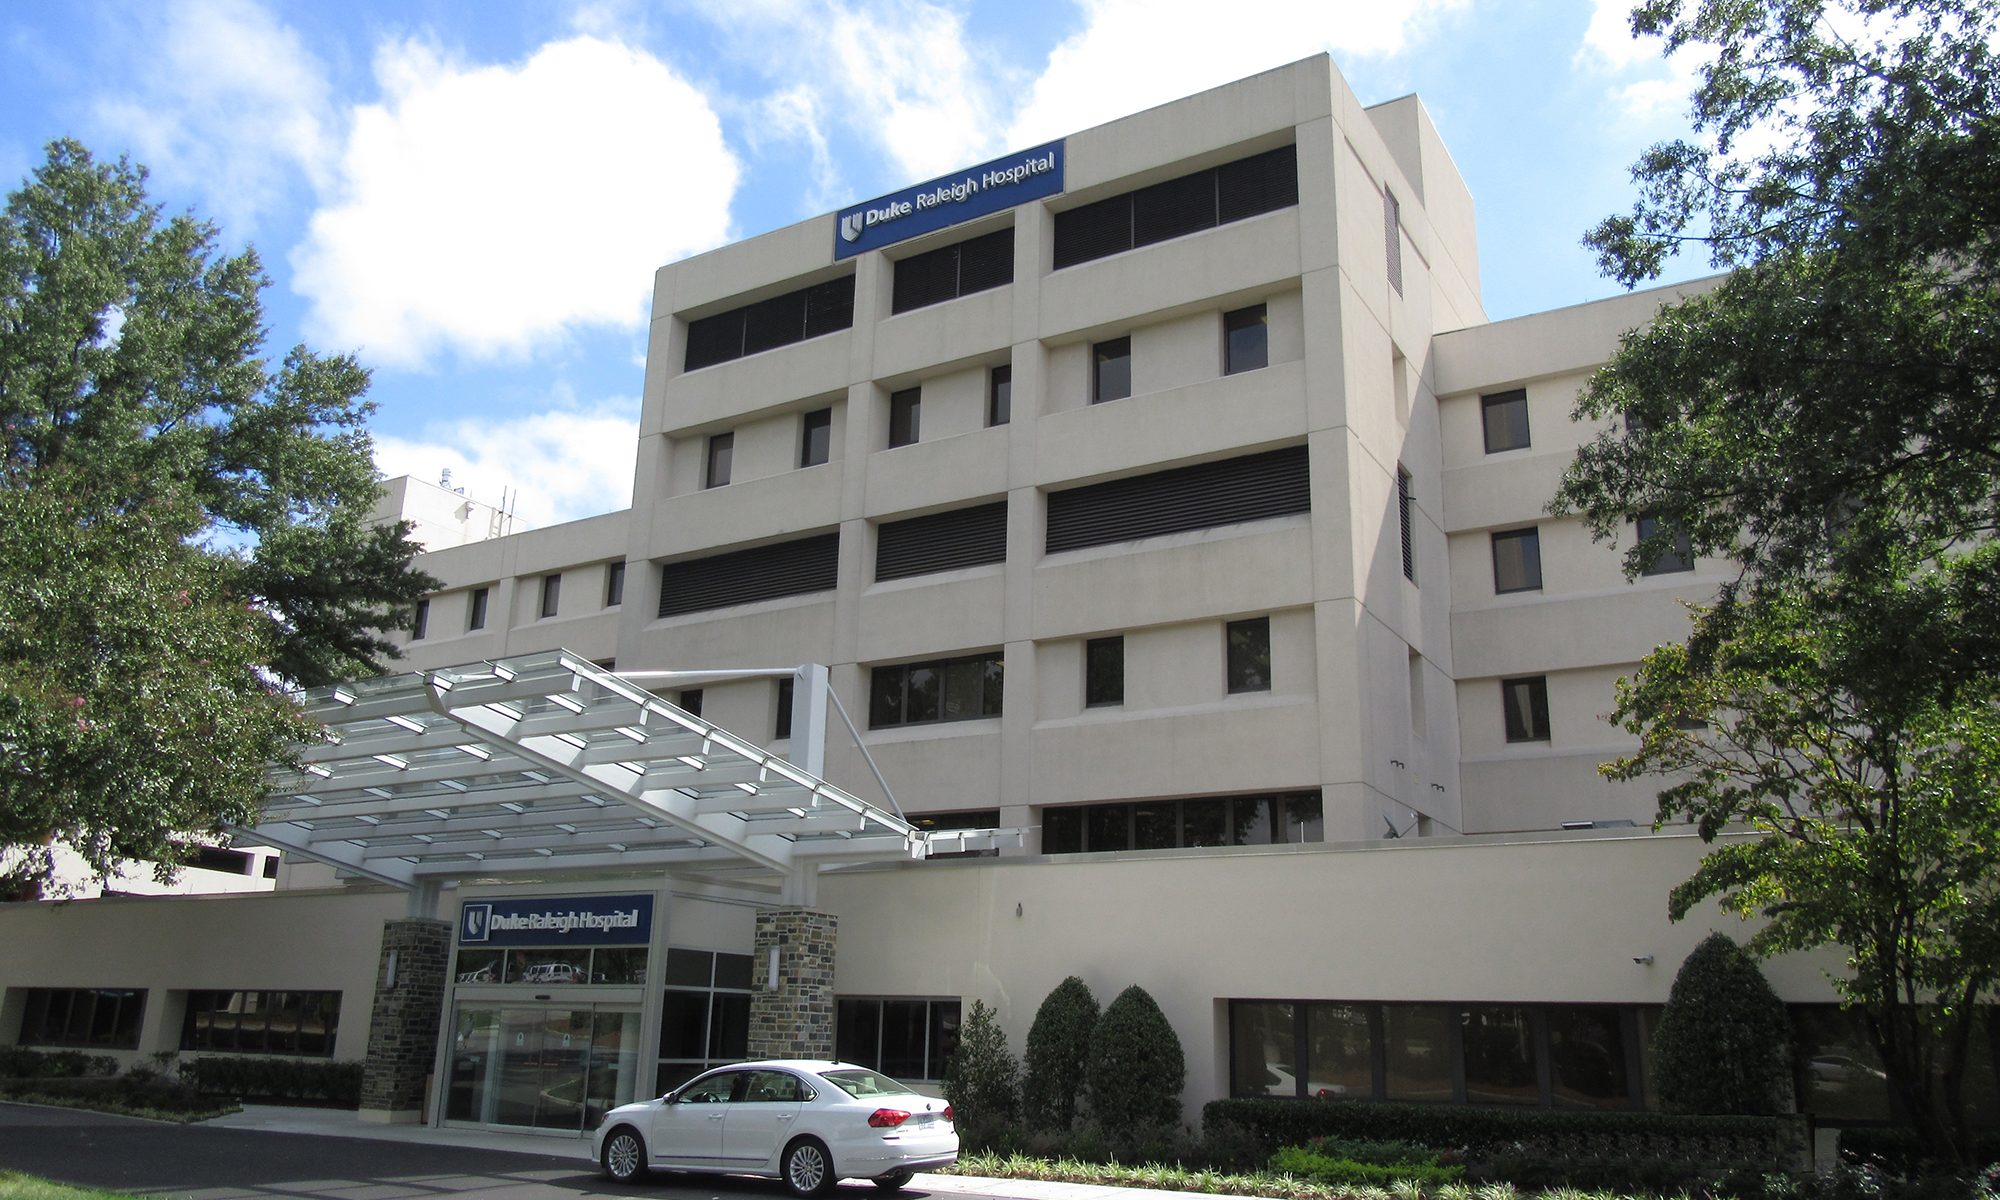 Exterior of Duke Raleigh Medical Center